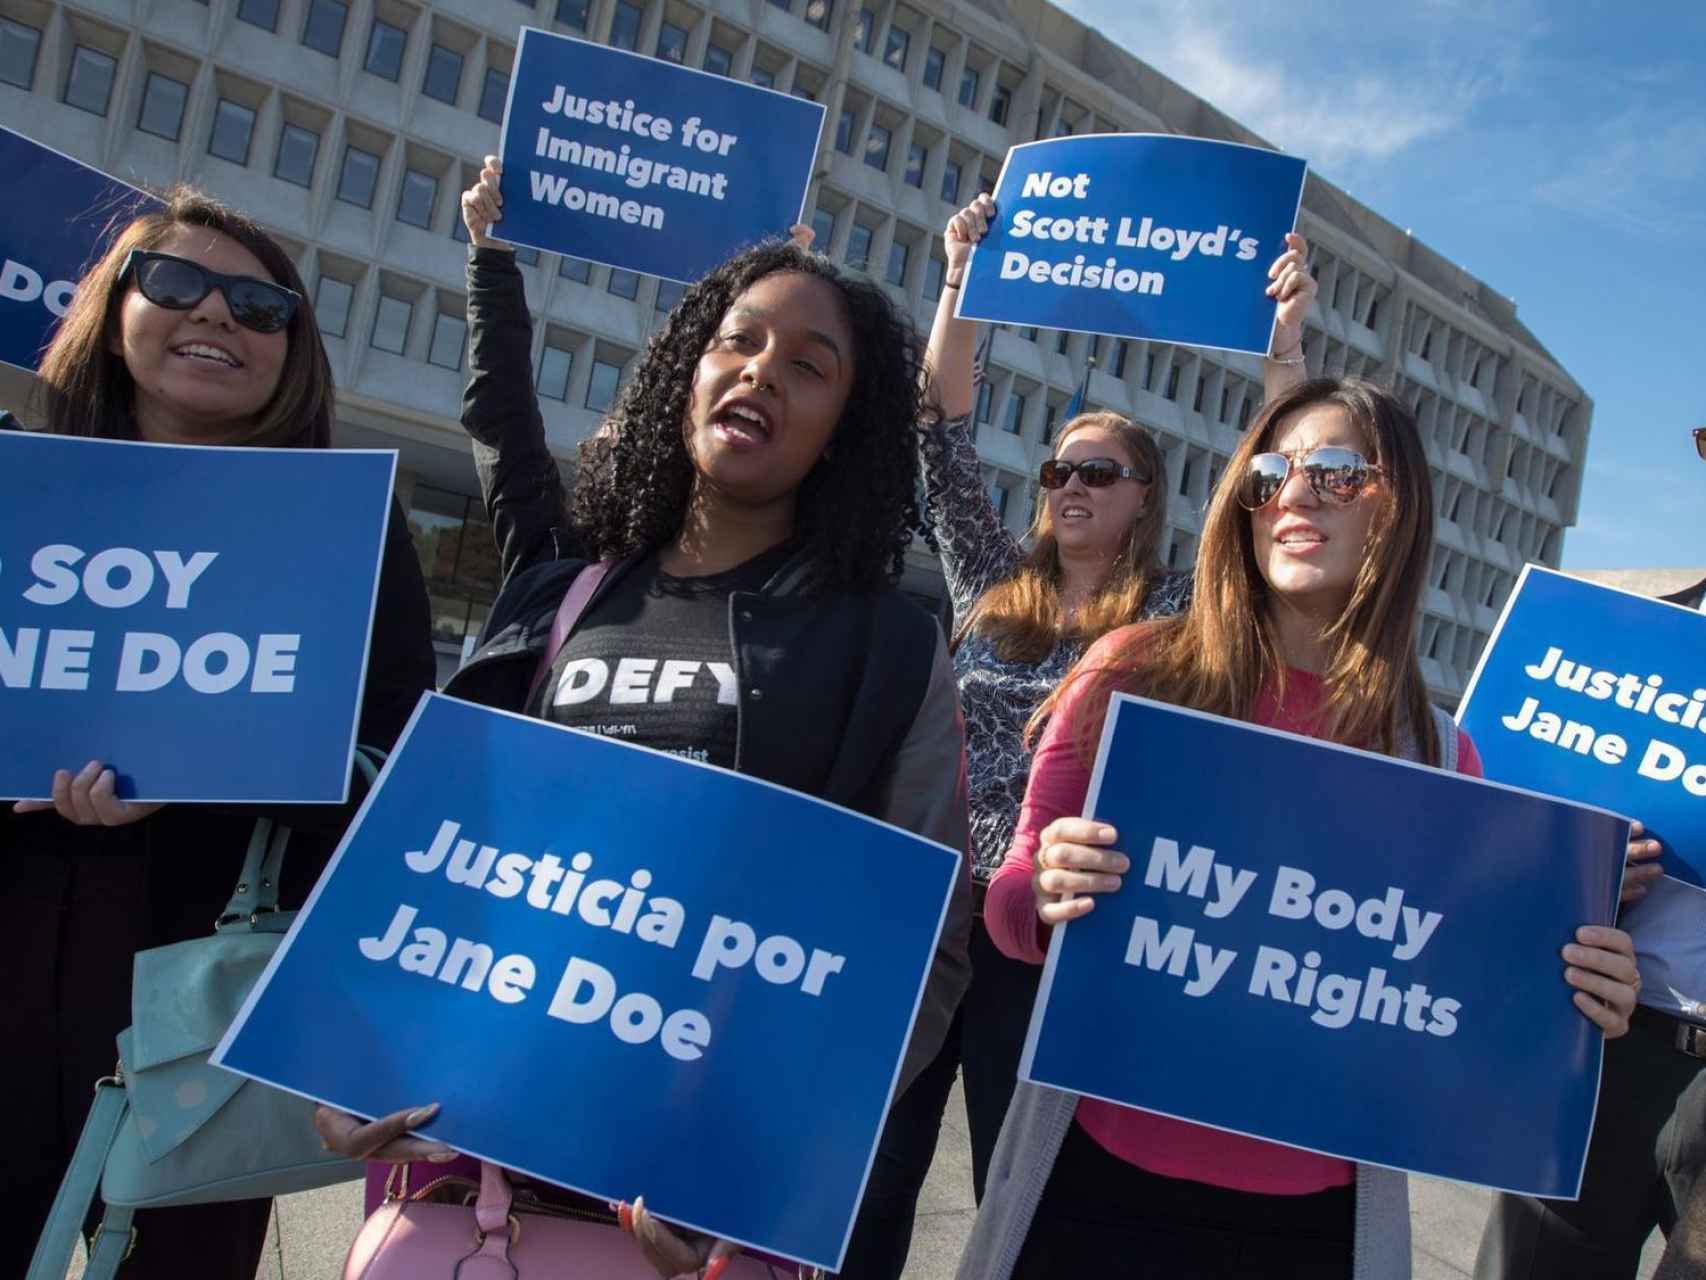 Un grupo de mujeres protesta por el caso Jane Doe.